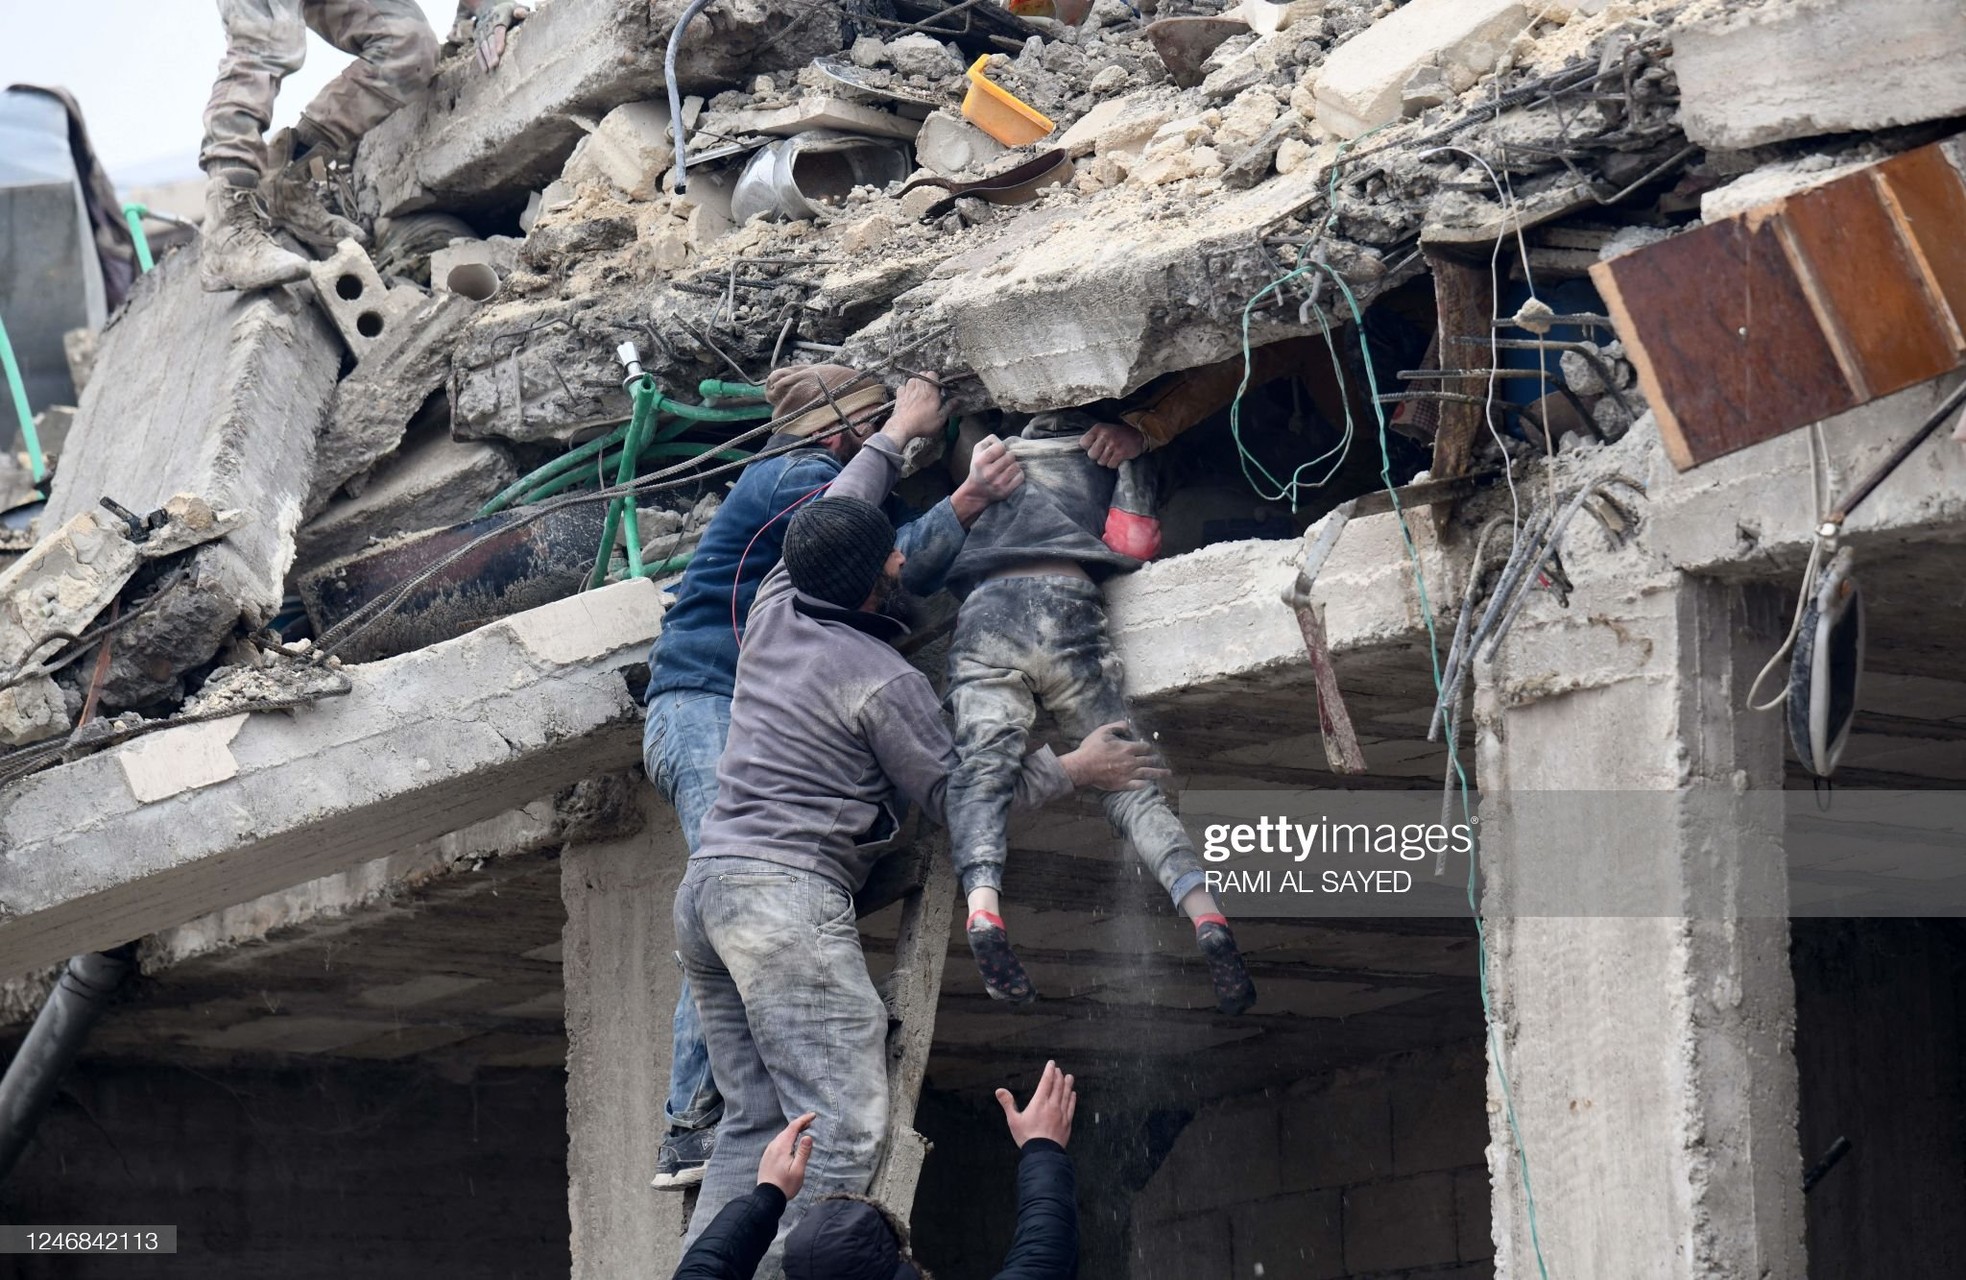 Rơi nước mắt cảnh người dân Thổ Nhĩ Kỳ thẫn thờ bên những tòa nhà vỡ vụn-4